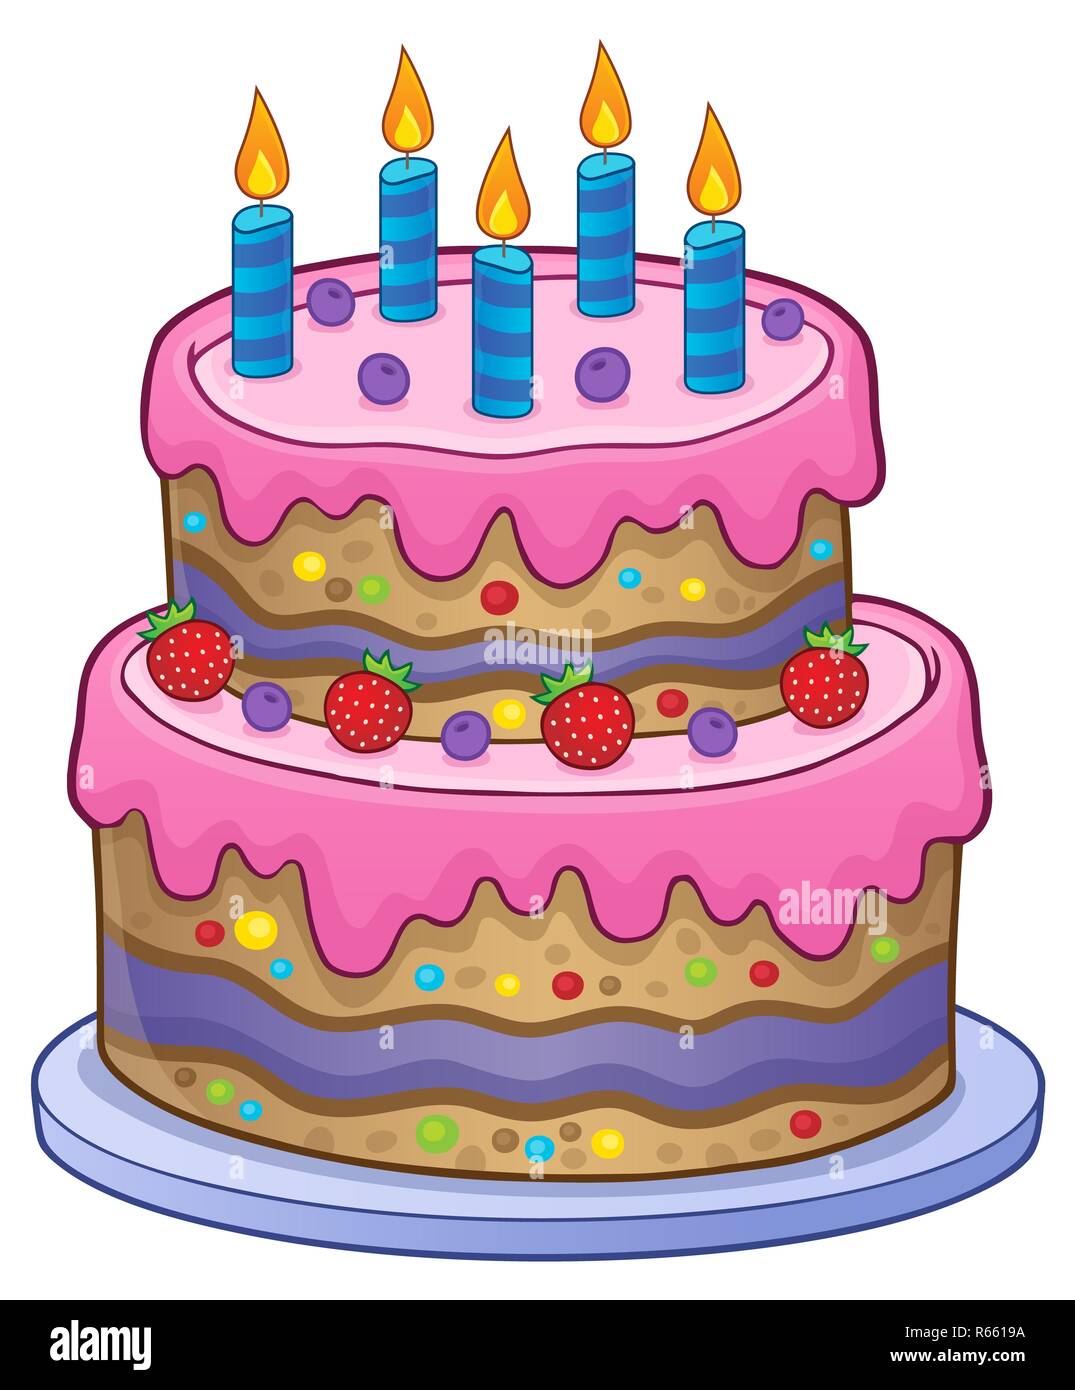 Gâteau d'anniversaire avec 5 BOUGIES Photo Stock - Alamy